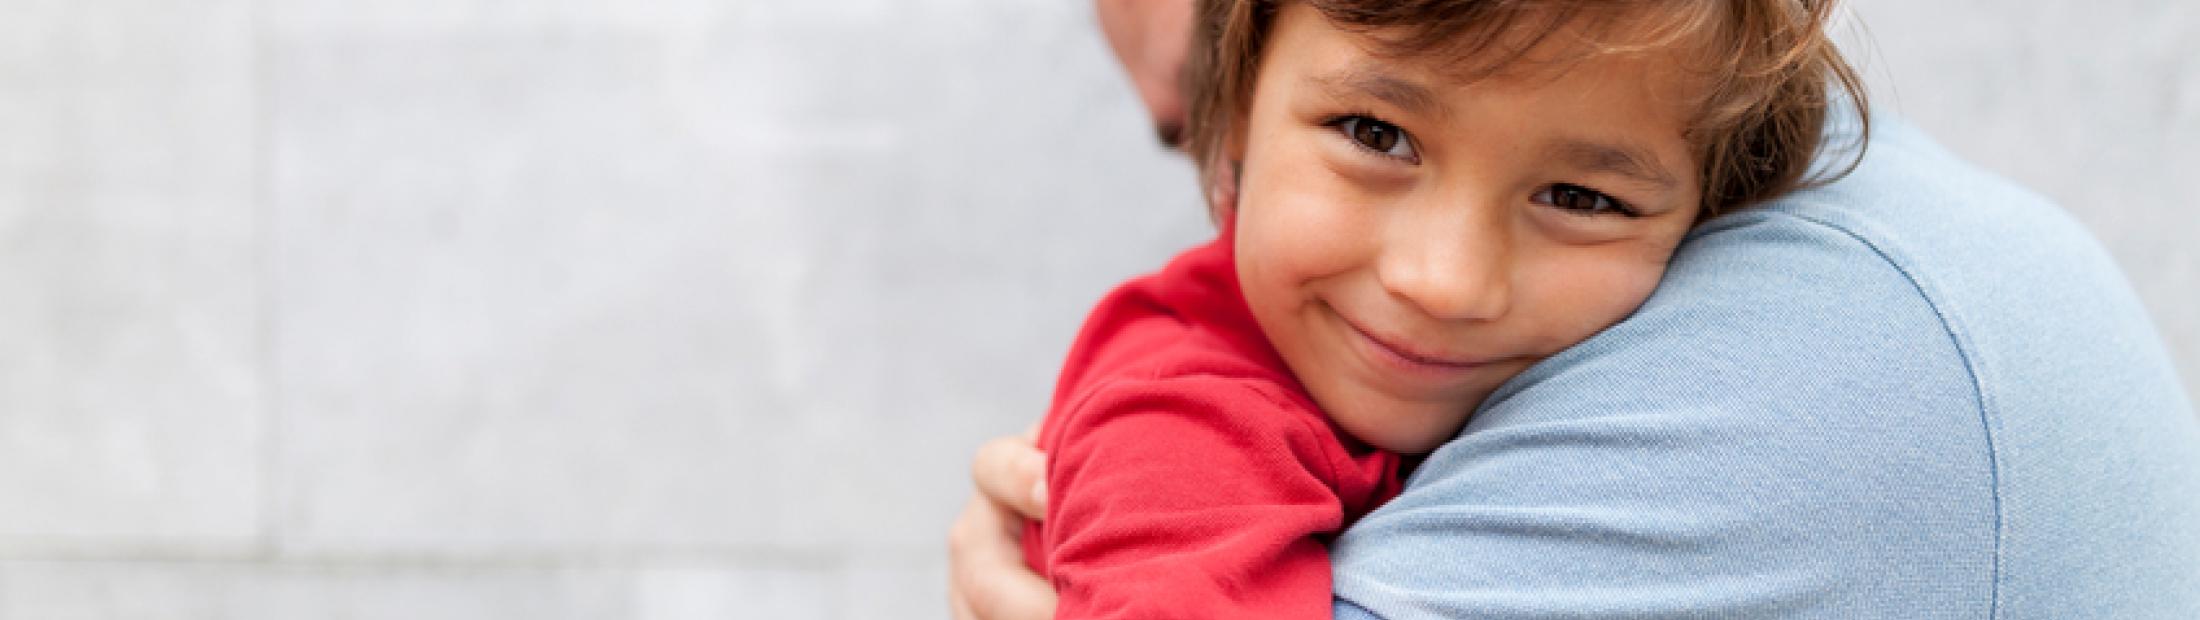 Parentalidad positiva: una nueva forma de entender la crianza